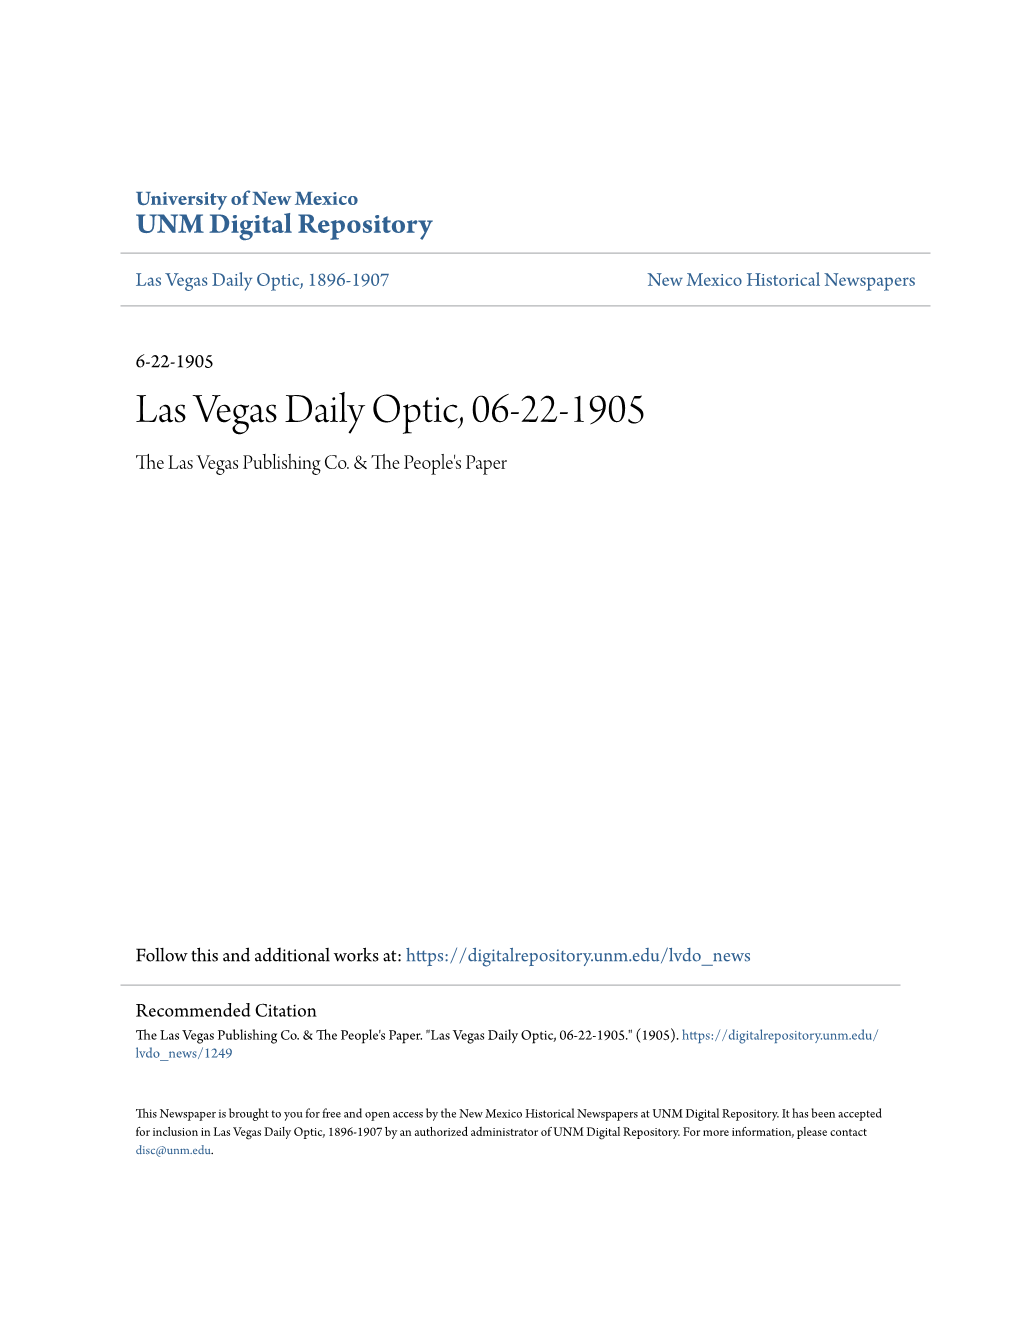 Las Vegas Daily Optic, 06-22-1905 the Las Vegas Publishing Co